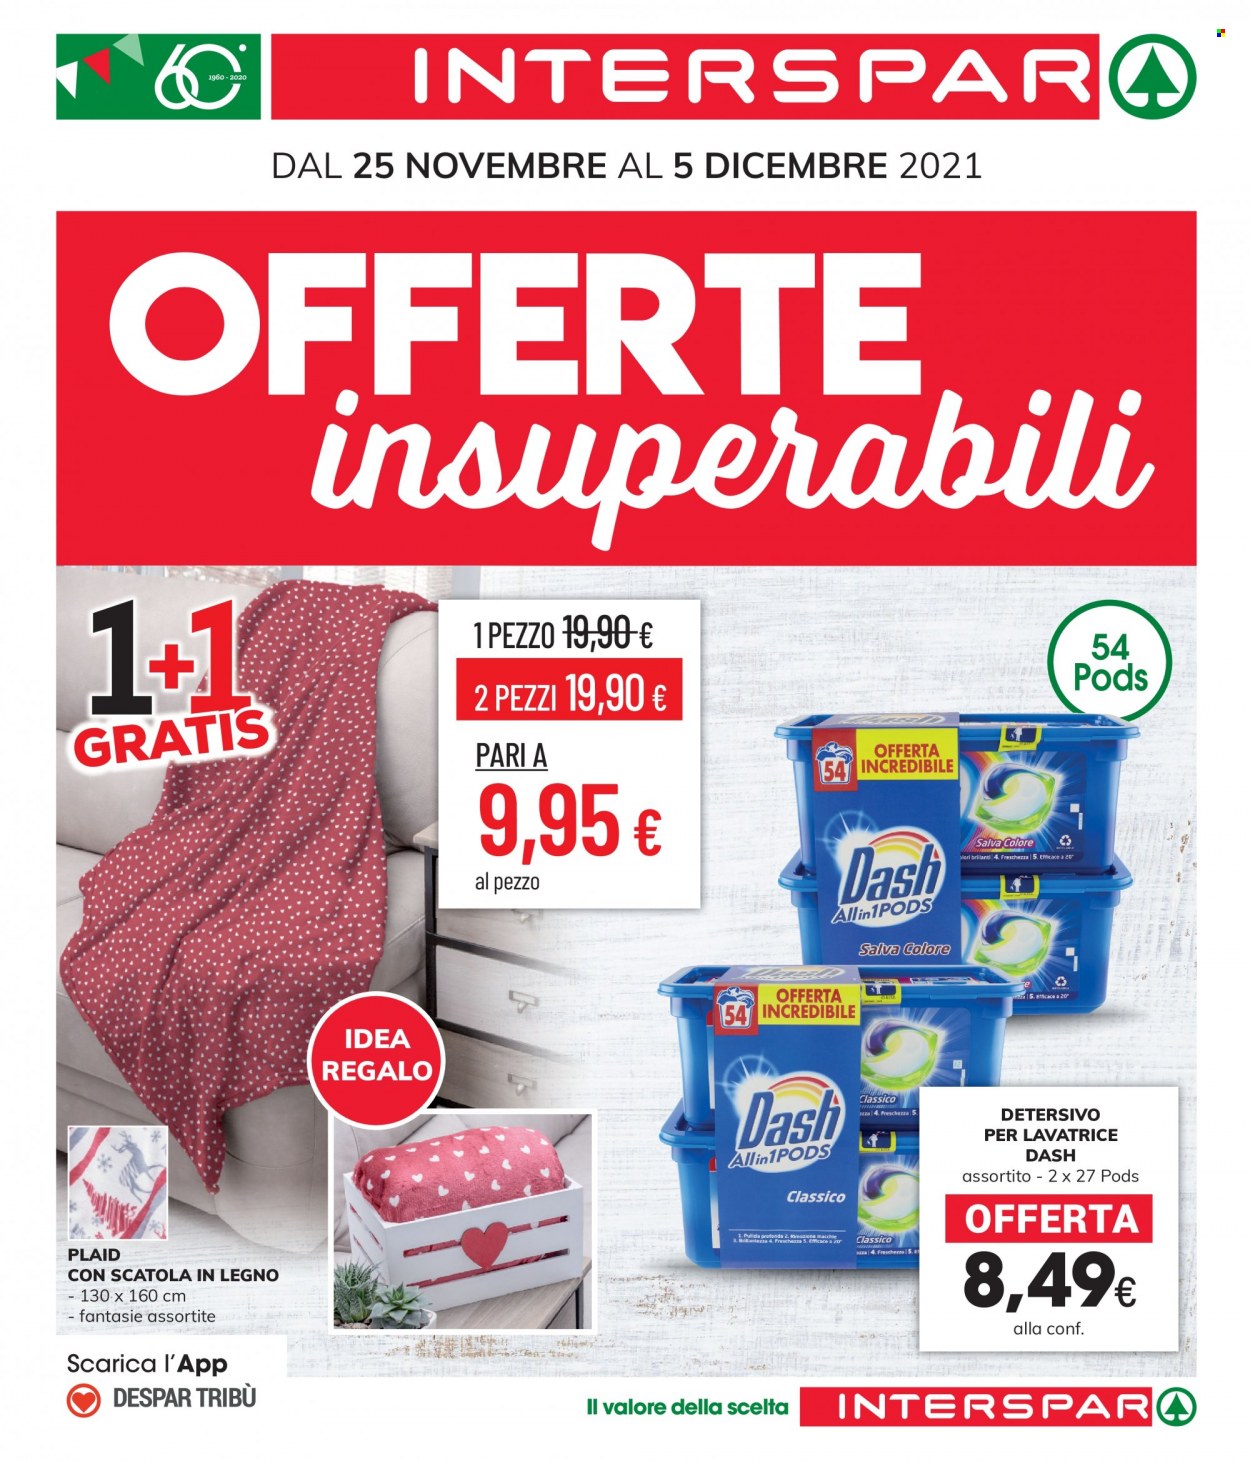 thumbnail - Volantino Interspar - 25/11/2021 - 5/12/2021 - Prodotti in offerta - detersivo per lavatrice, Dash, plaid. Pagina 1.